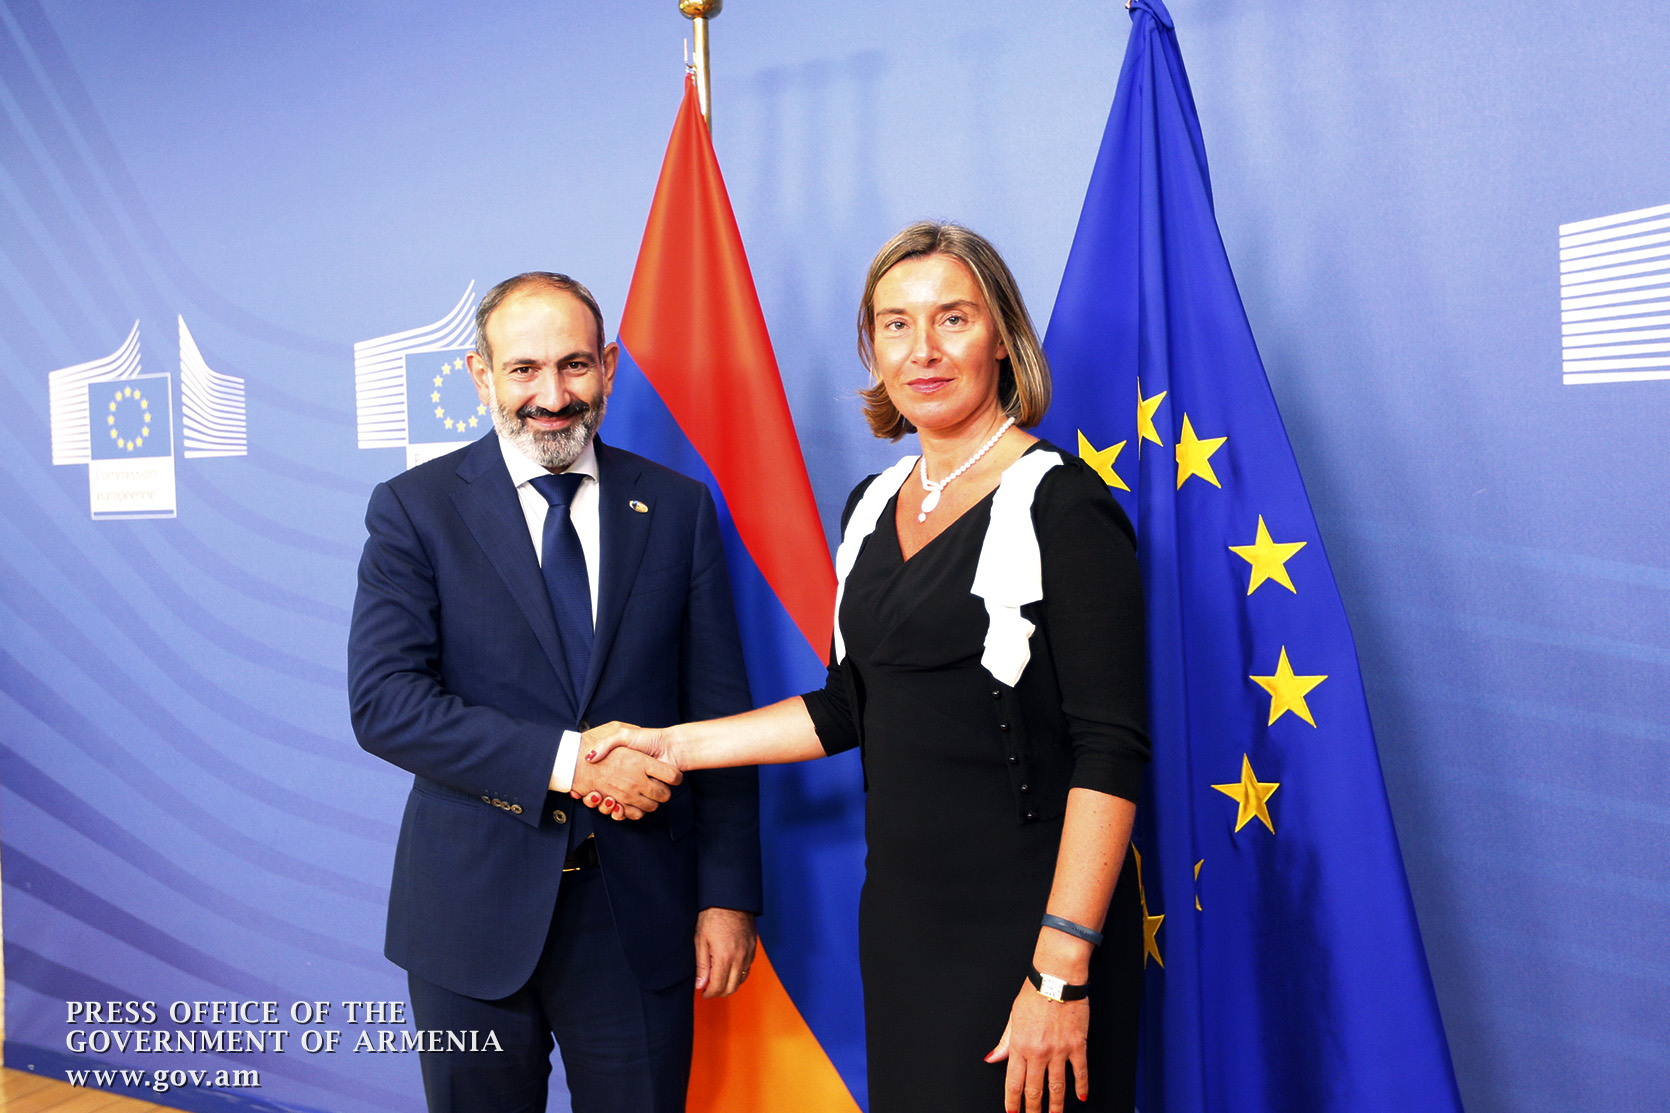 ЕС готов поддержать реализуемые в Армении реформы - Федерика Могерини